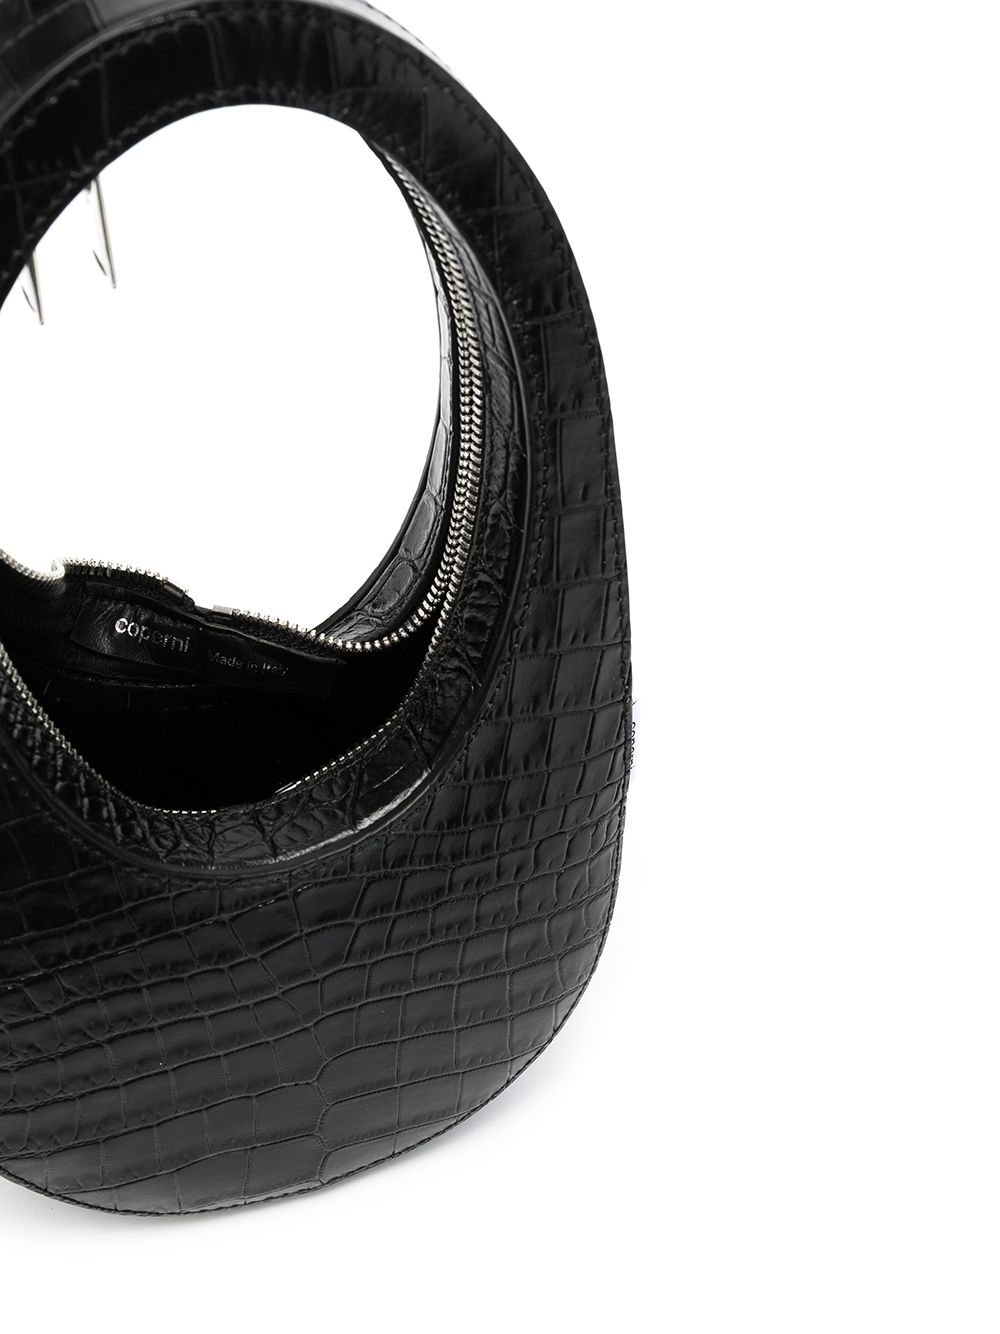 фото Coperni сумка-тоут размера мини с тиснением под крокодила